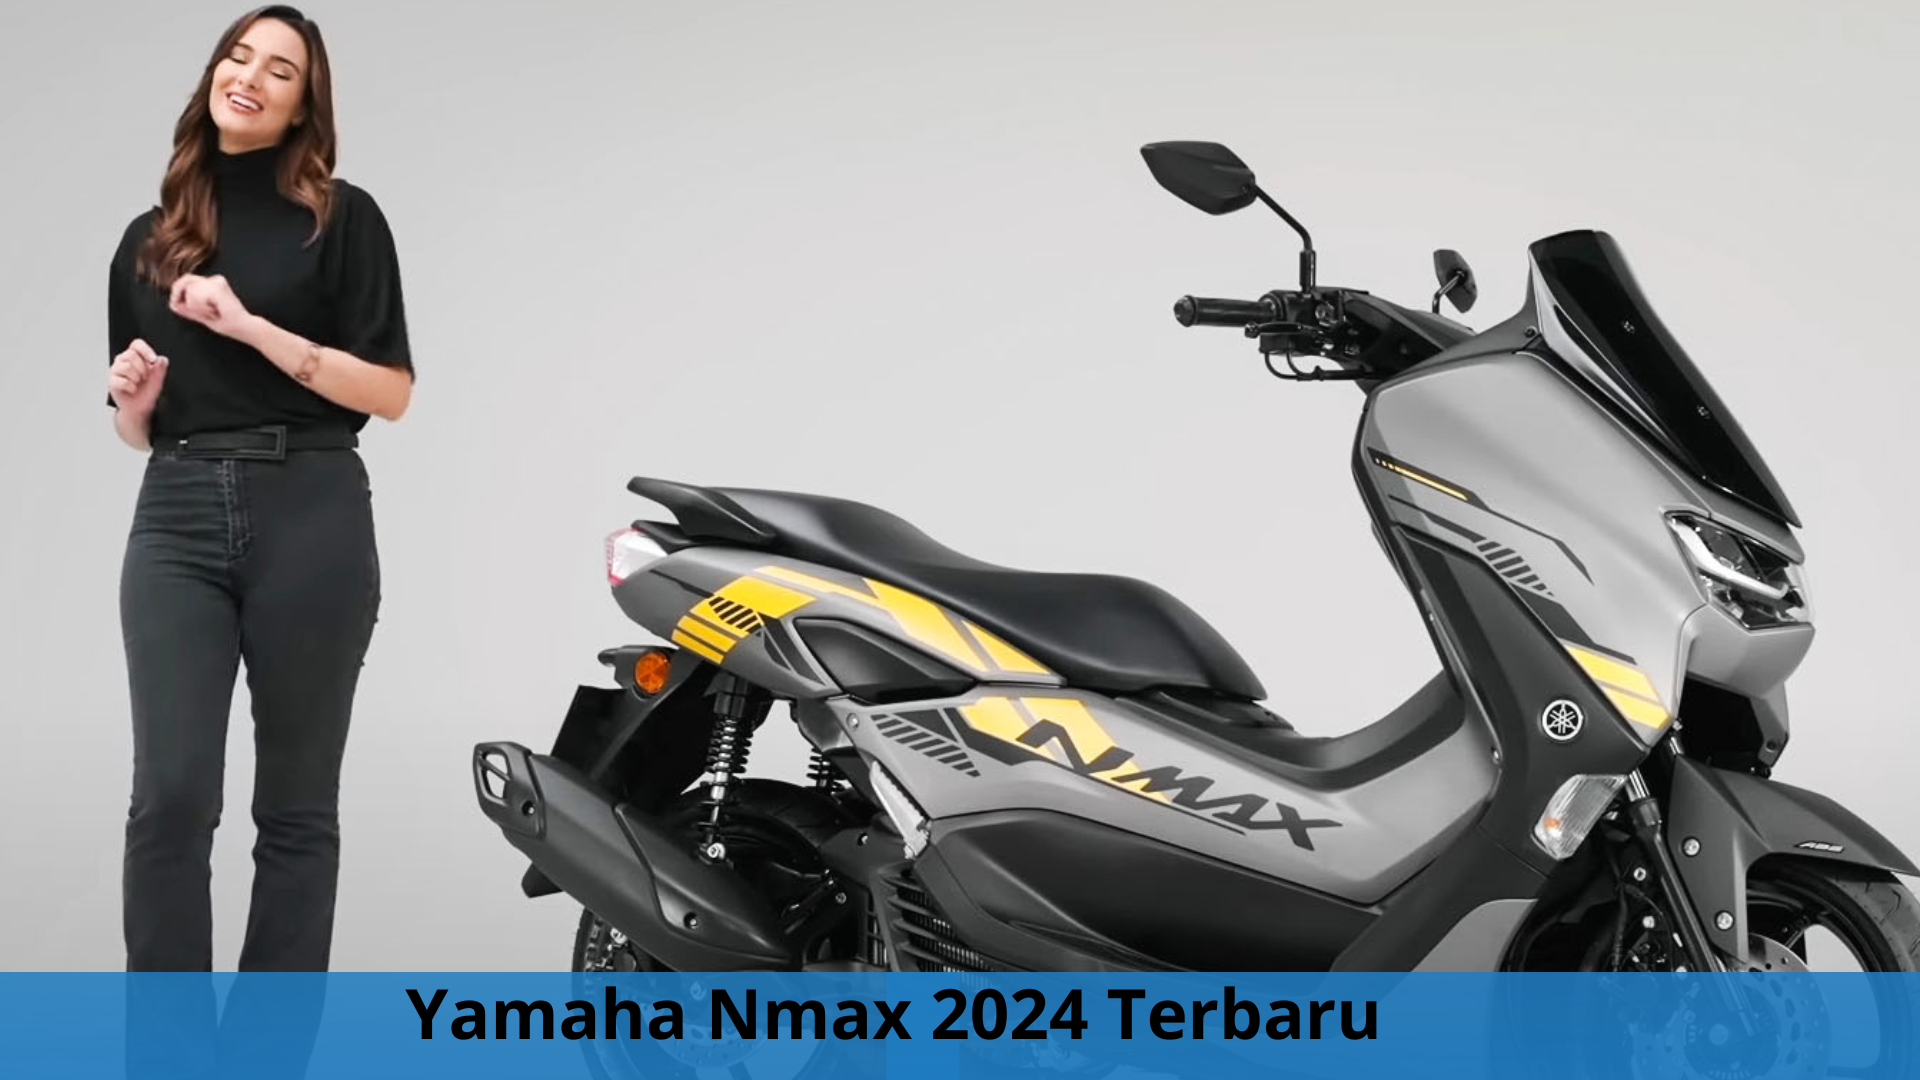 Yamaha Nmax 2024 Terbaru, Skutik Premiun dengan Desain Dek Rata dan Mesin Bongsor 160 CC 